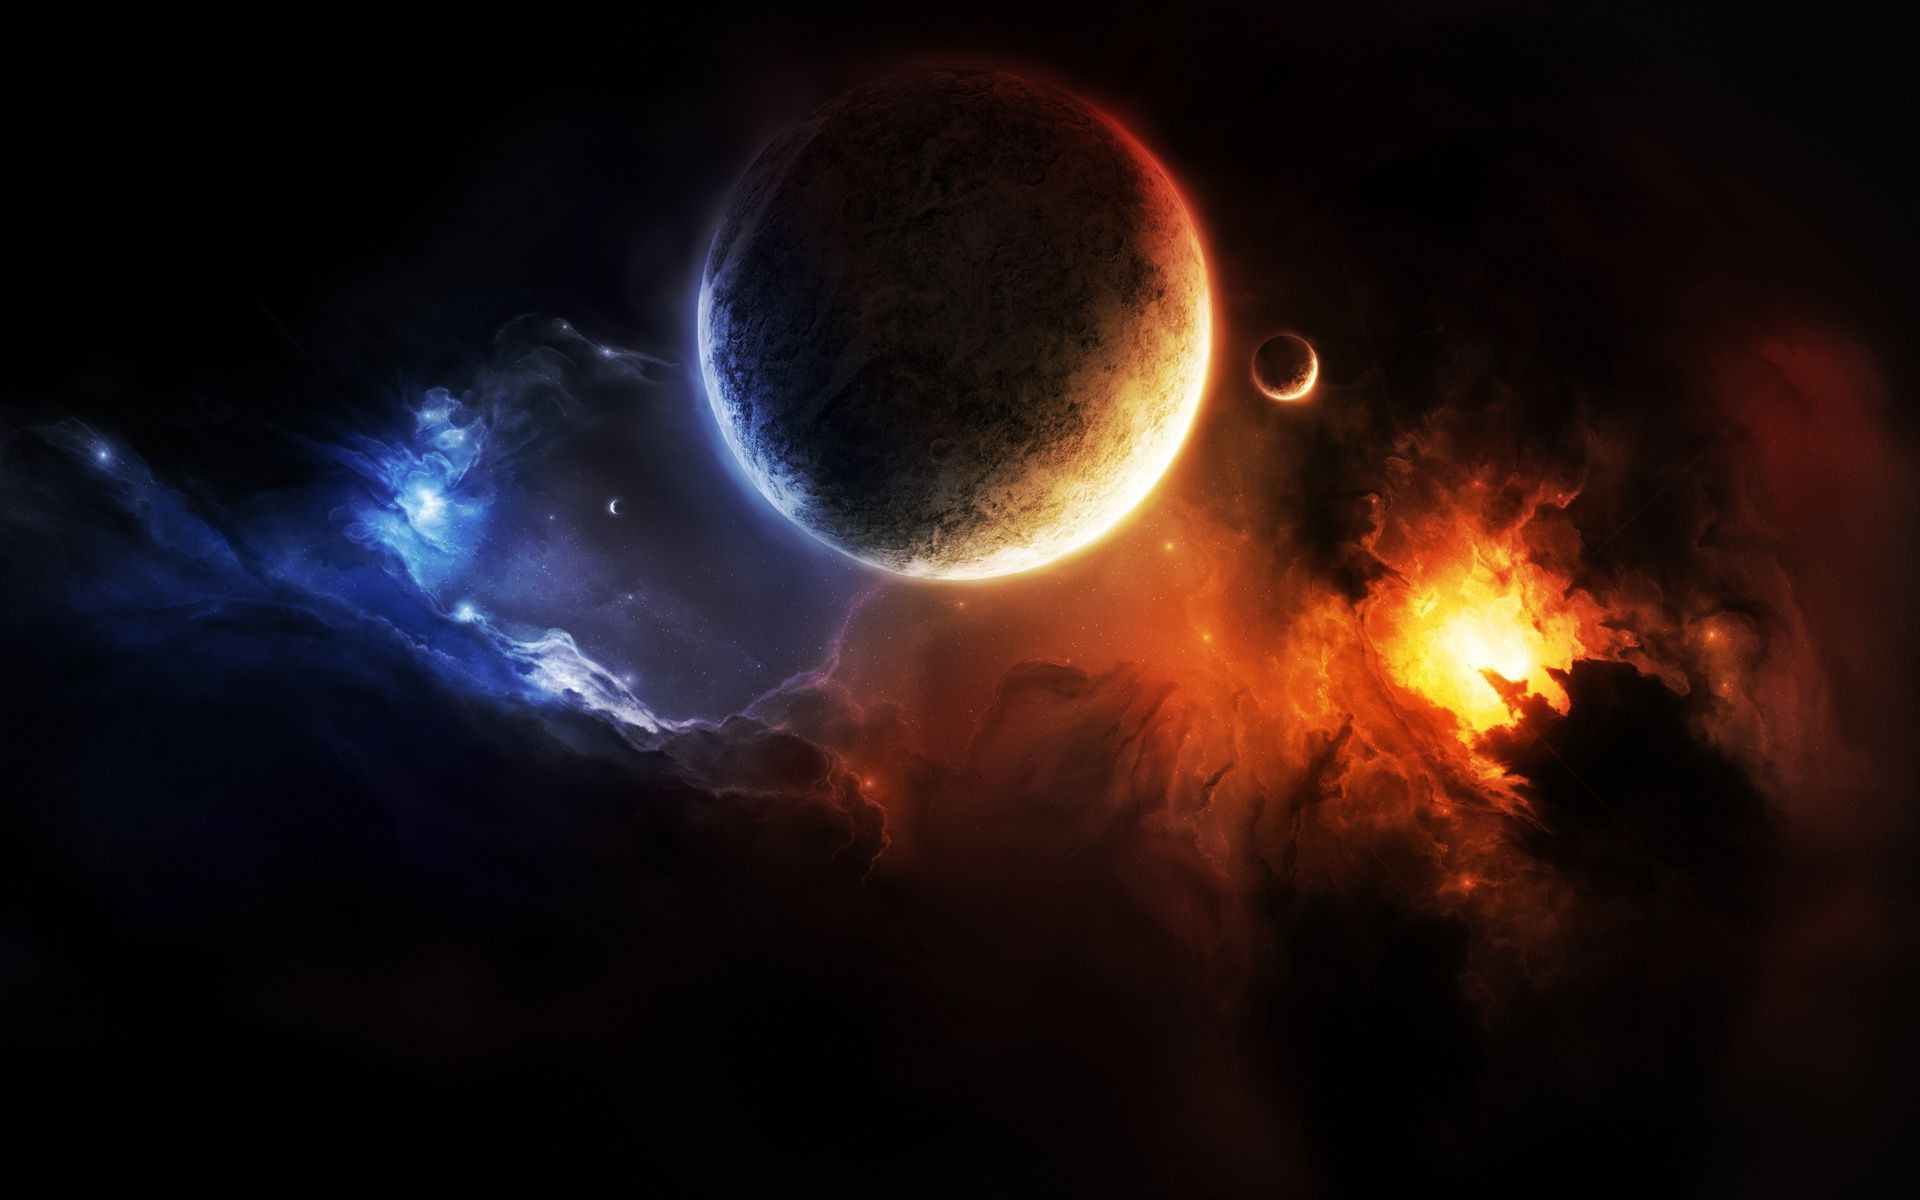 планеты астрономия свет дым луна галактика пространство космос пламя фантазия аннотация планеты шарообразные темный наука энергии сюрреалистично